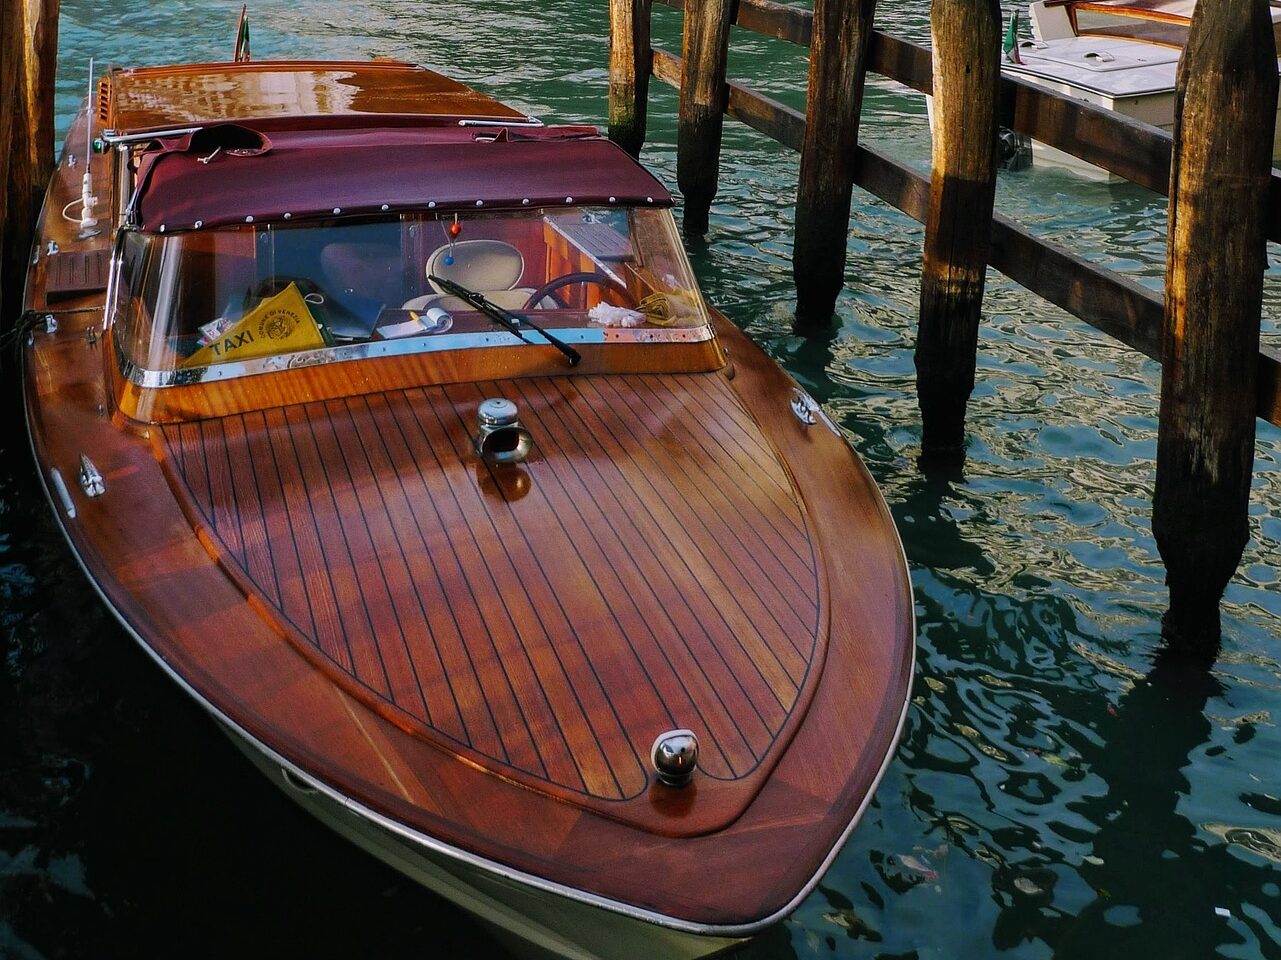 Wassertaxi in Venedig, Italien.